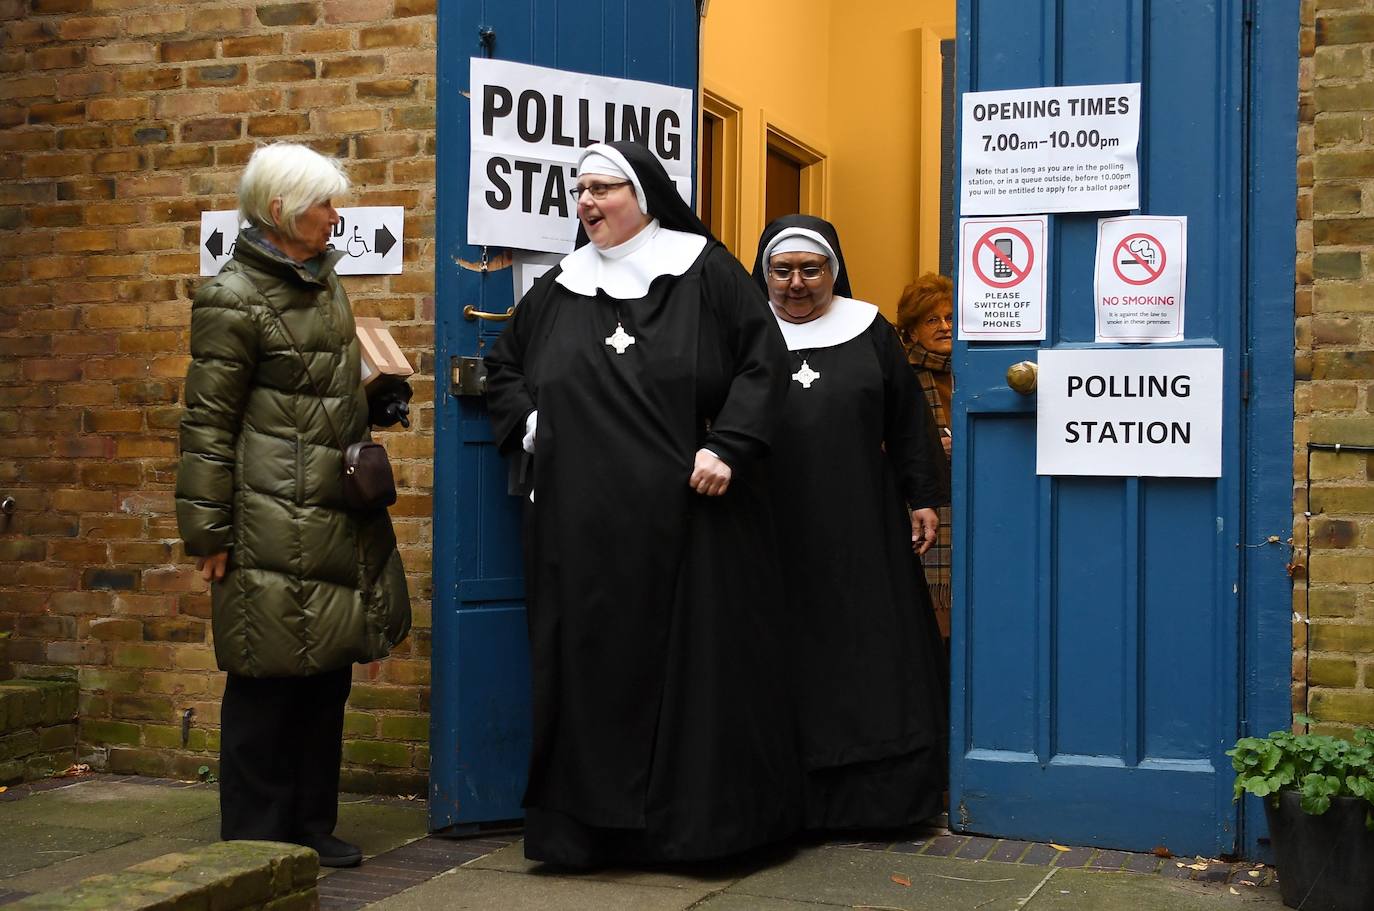 La jornada electoral del Reino Unido, en imágenes